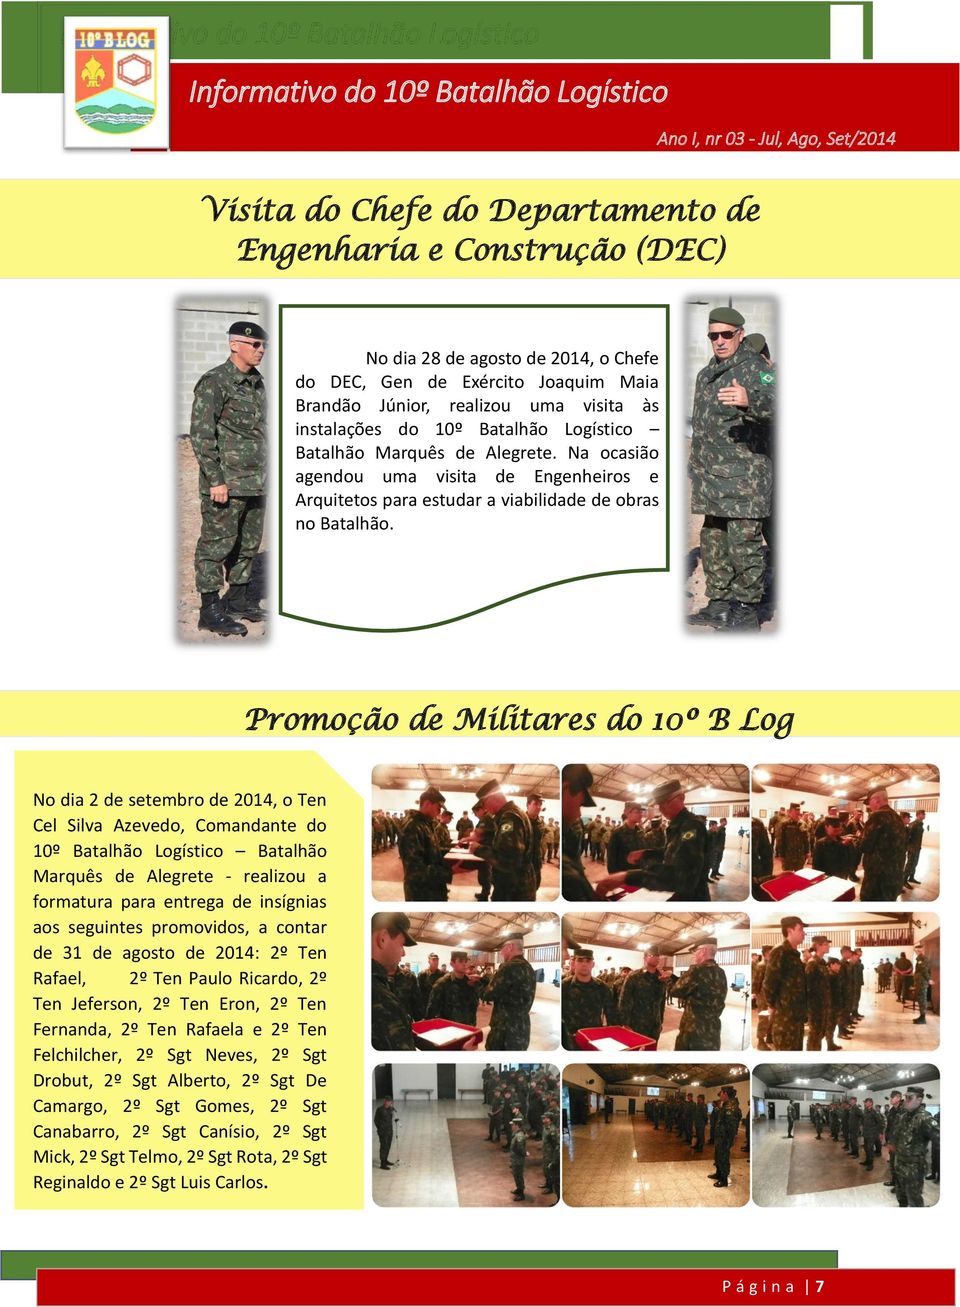 Promoção de Militares do 10º B Log No dia 2 de setembro de 2014, o Ten Cel Silva Azevedo, Comandante do 10º Batalhão Logístico Batalhão Marquês de Alegrete - realizou a formatura para entrega de